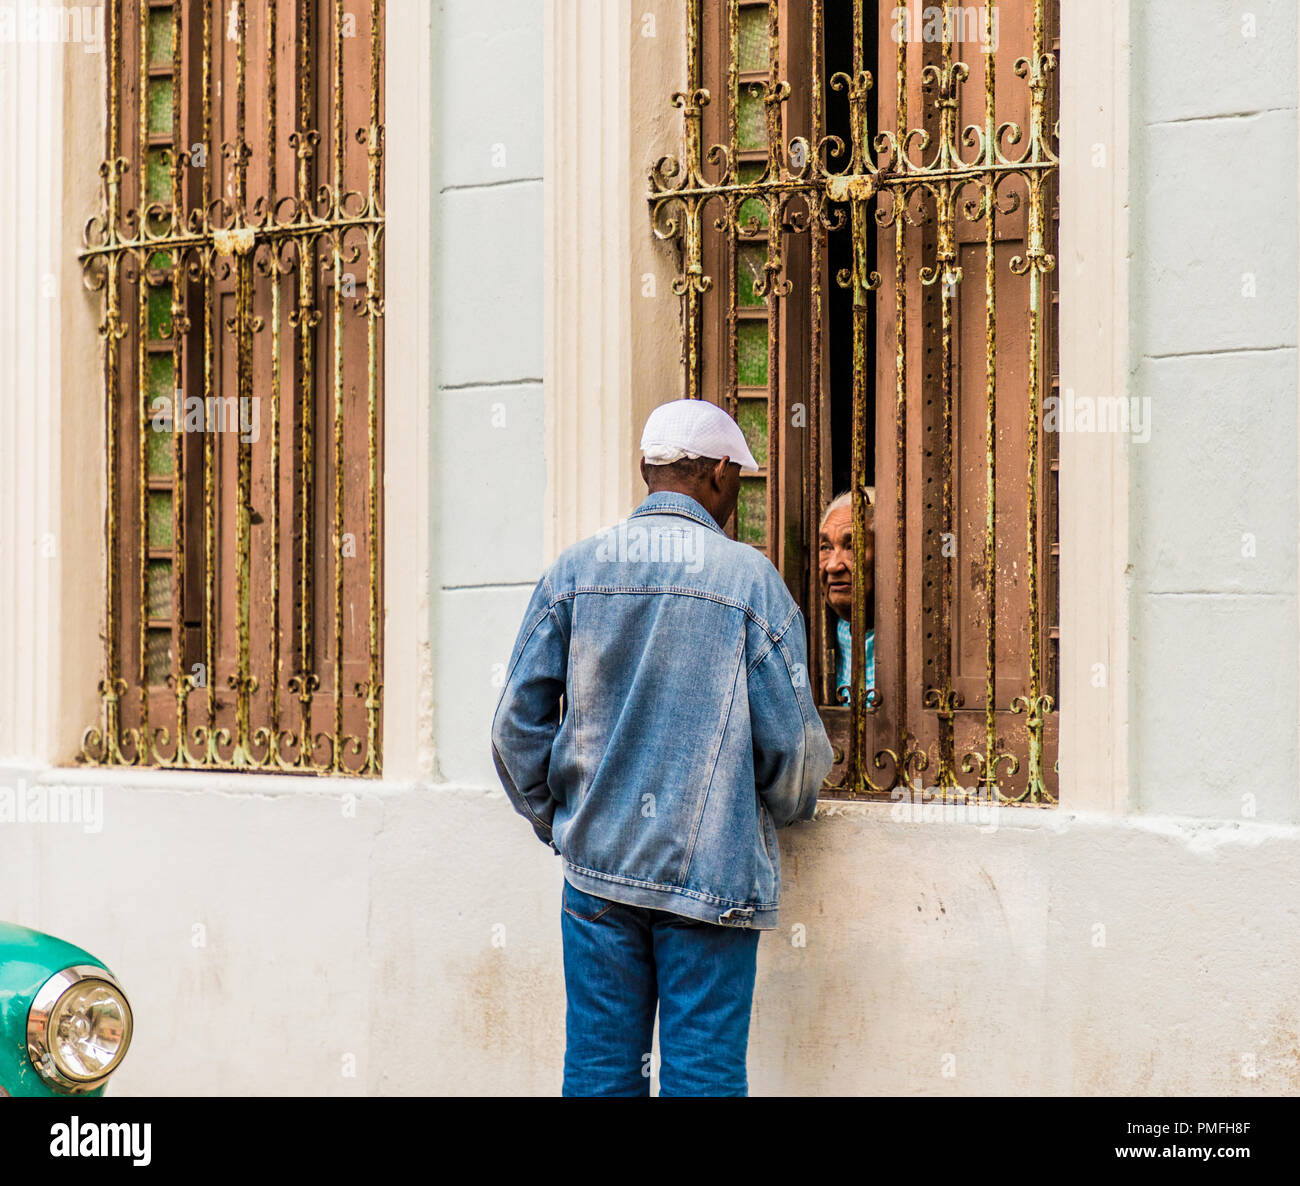 Une vue typique de La Havane à Cuba Banque D'Images